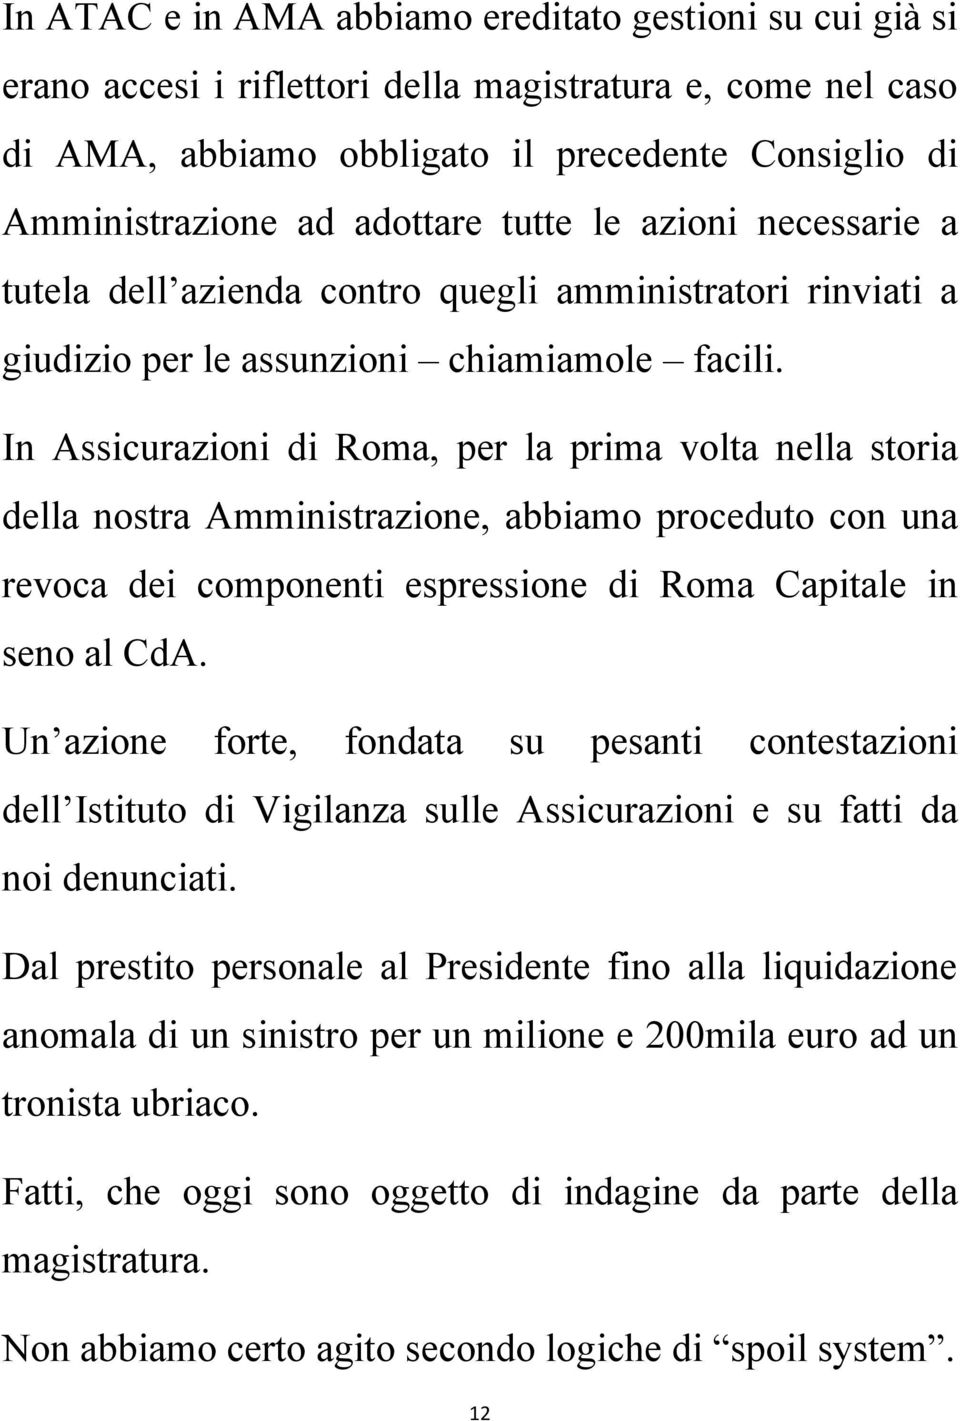 In Assicurazioni di Roma, per la prima volta nella storia della nostra Amministrazione, abbiamo proceduto con una revoca dei componenti espressione di Roma Capitale in seno al CdA.